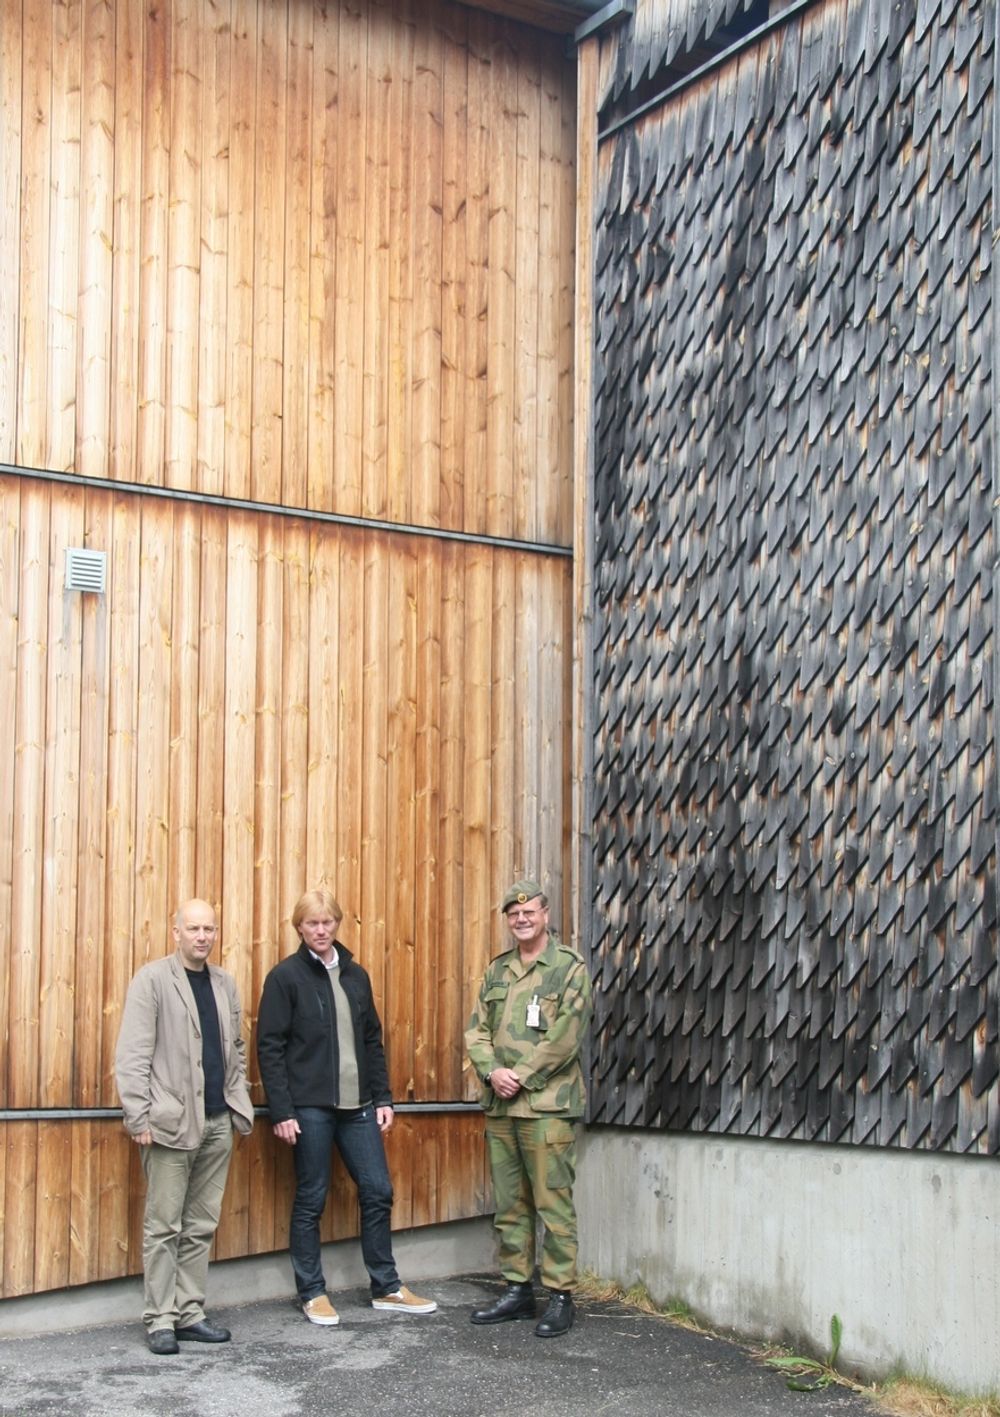 VARIERT: Her viser, fra venstre, arkitekt Arvid Rønsen Ruud, Prosjektsjef Jens Levi Moldestad og ansvarlig for drift og vedlikehold Åge Mohaugen hvordan fargeutviklingen på ubehandlet trevirke ikke er ensartet.  Bilde fra Rena Leir